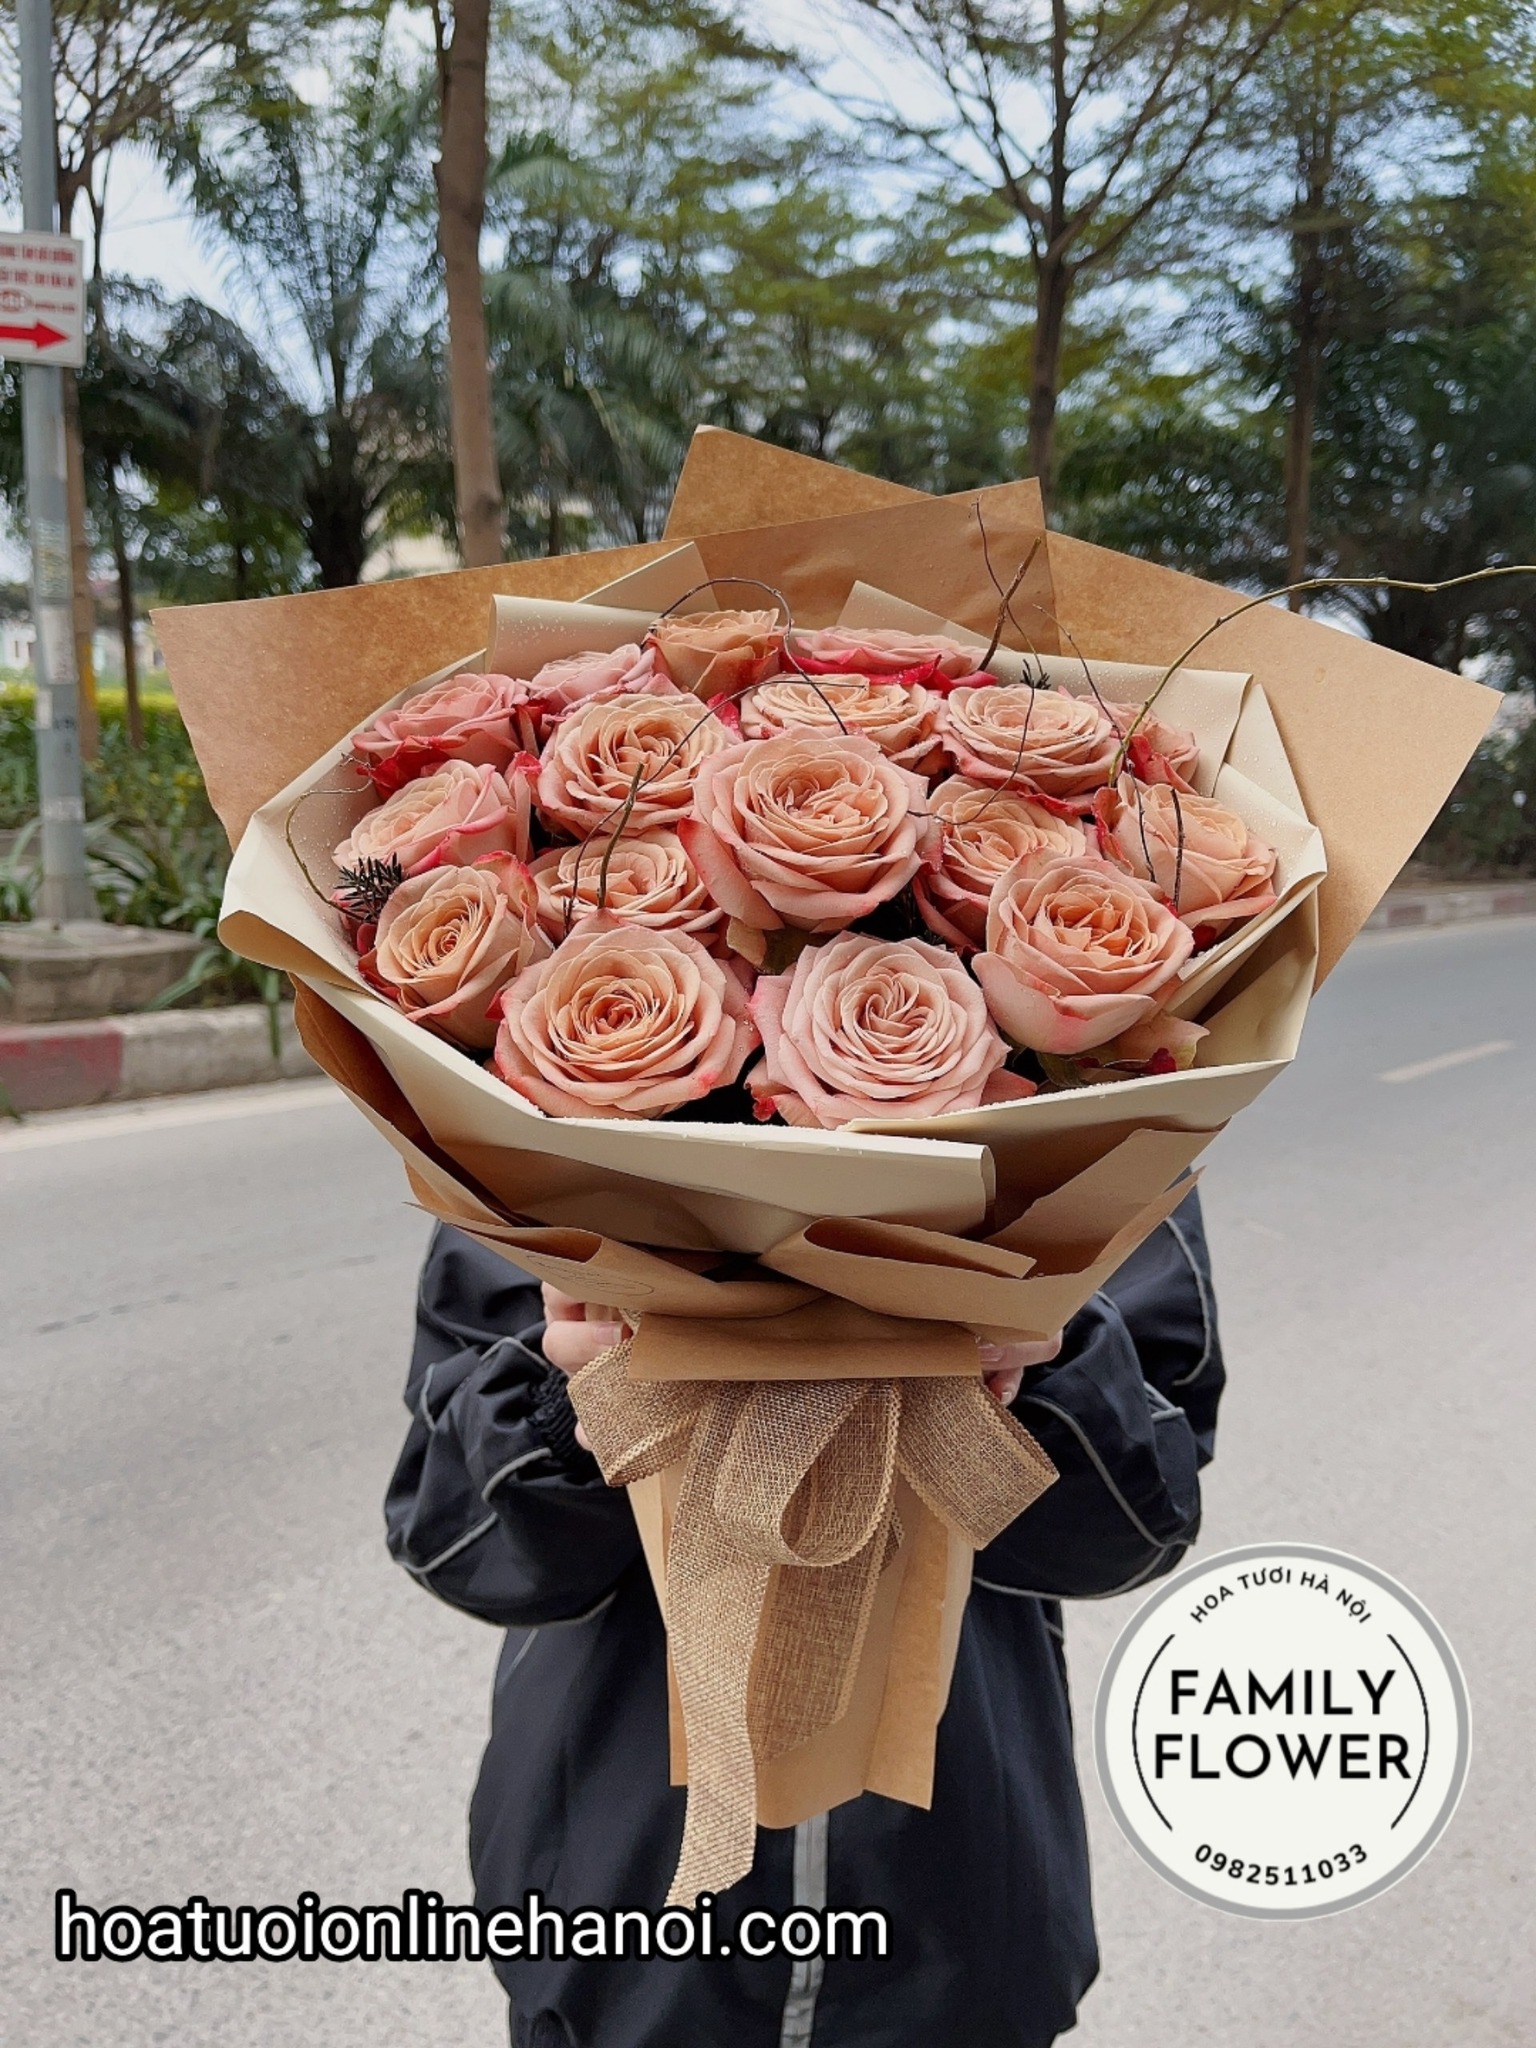 Bó hoa hồng capuchino đẹp tặng sinh nhật tại Ba Đình - Cầu Giấy - Hà Nội.